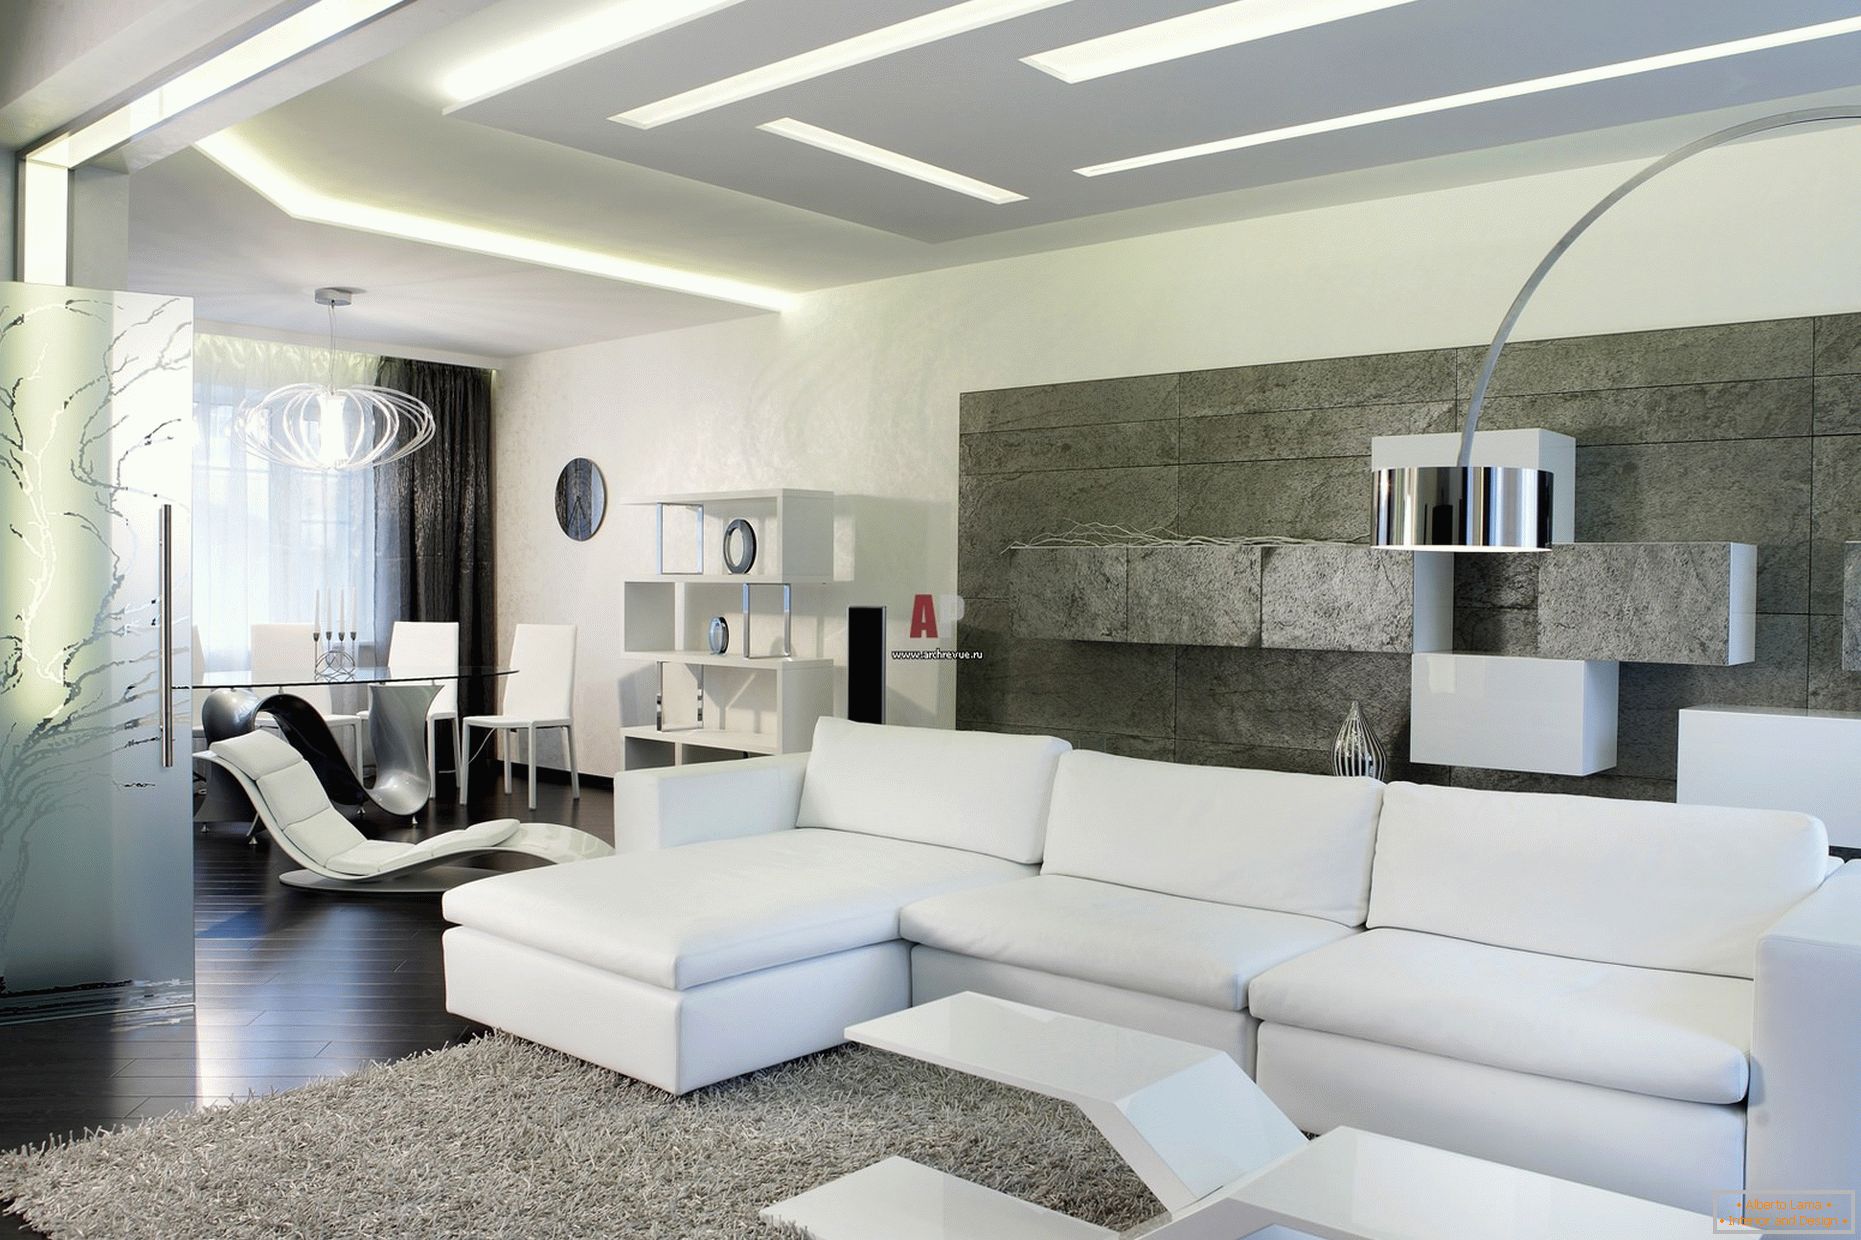 Bílý interiér hostů v minimalistickém stylu je pozoruhodný pro moderní, odvážný design s high-tech náznaky.